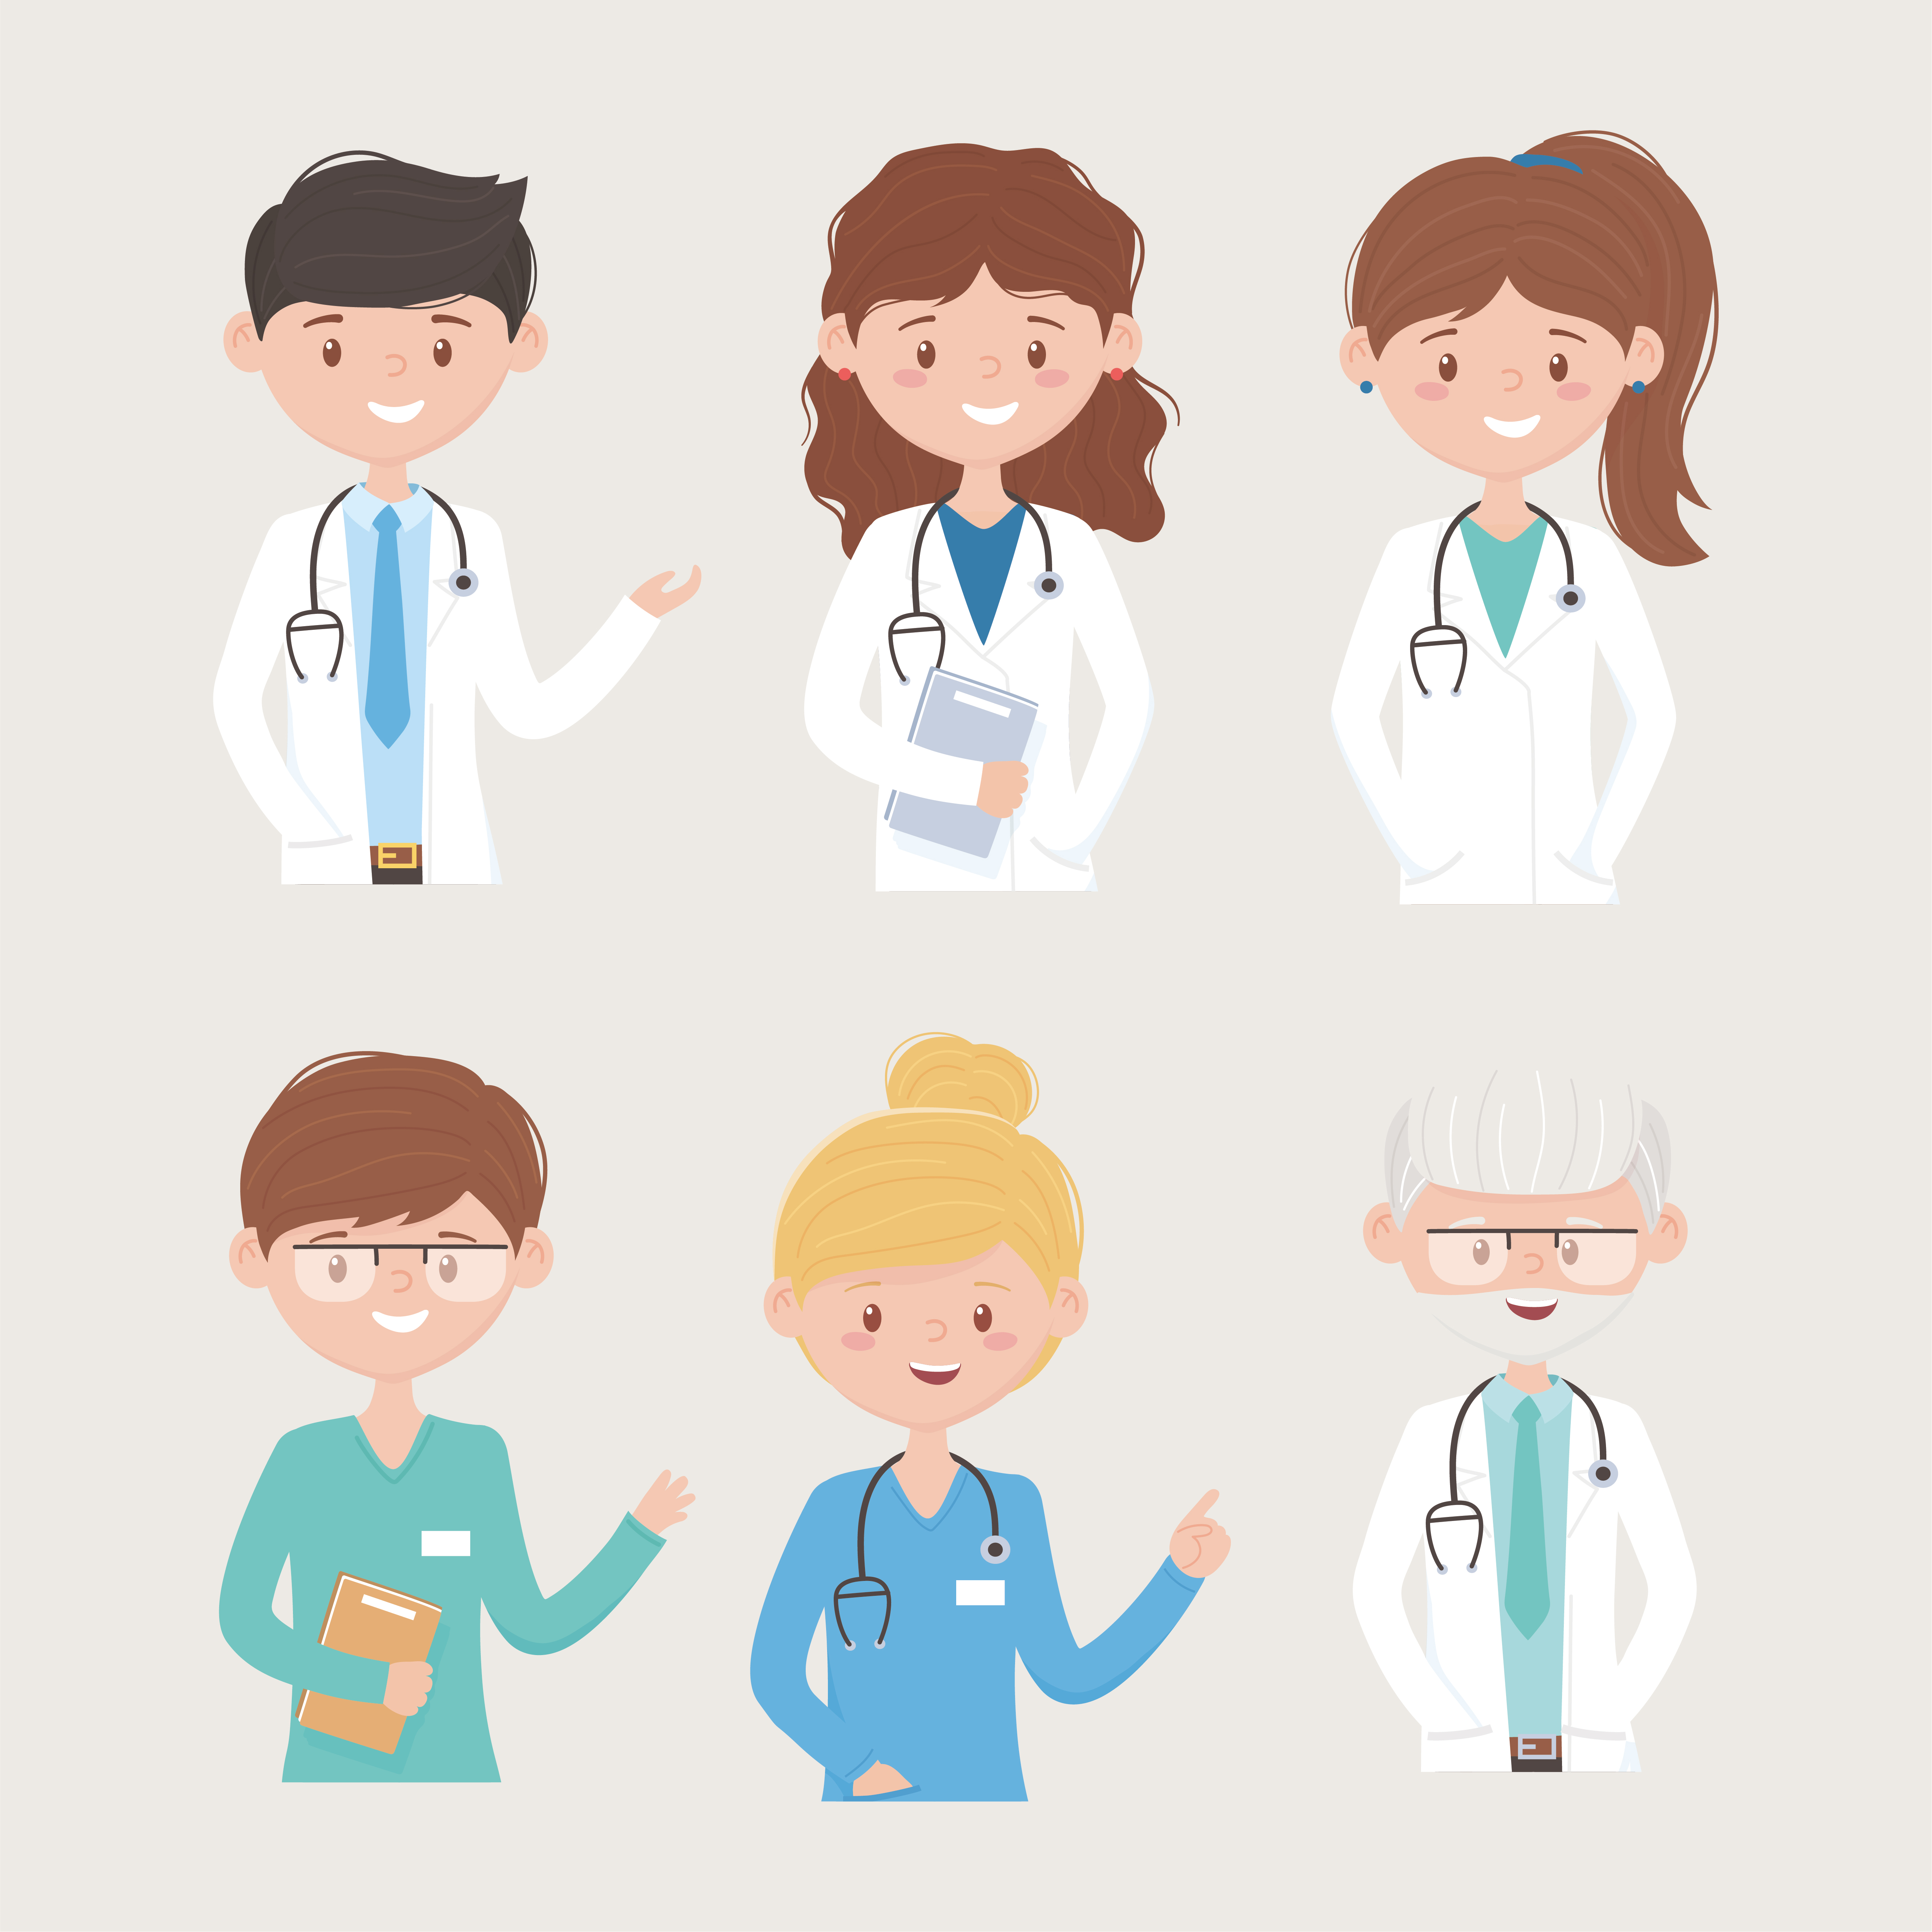 desenho animado personagens da equipe médica definido - Fotos de arquivo  #11708803